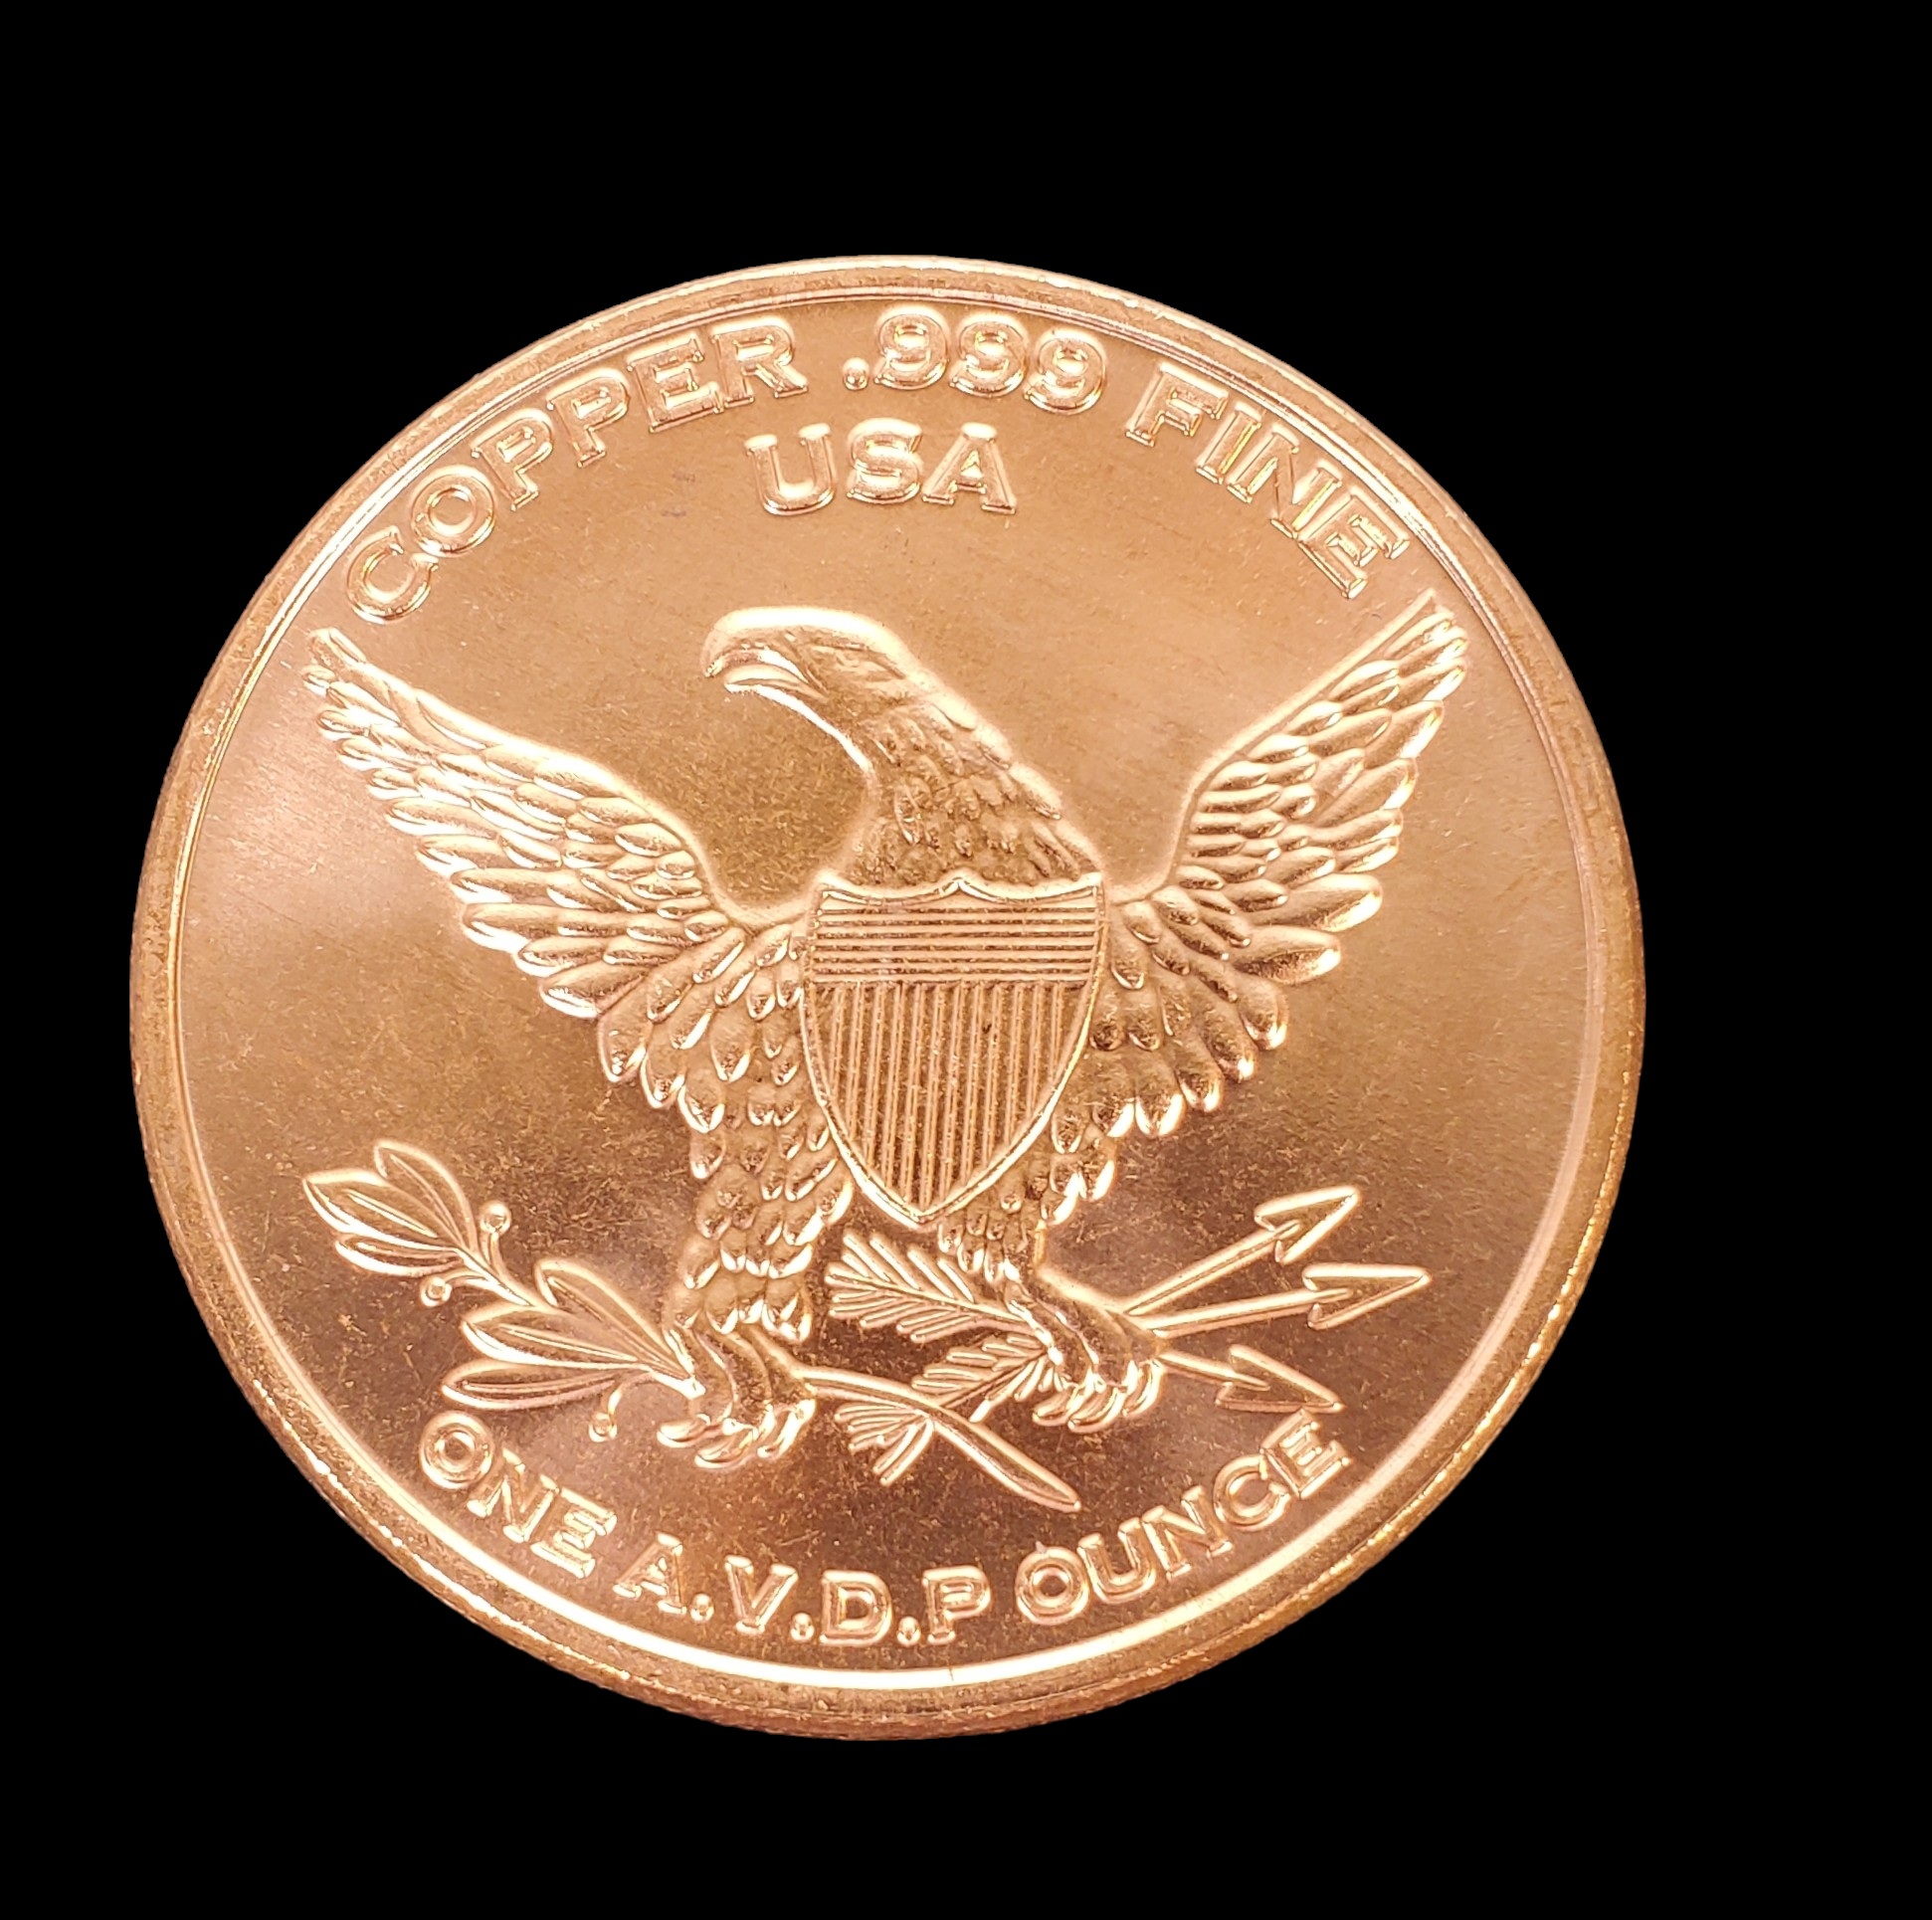 1 Oz Copper Coin (Moose), Michigan